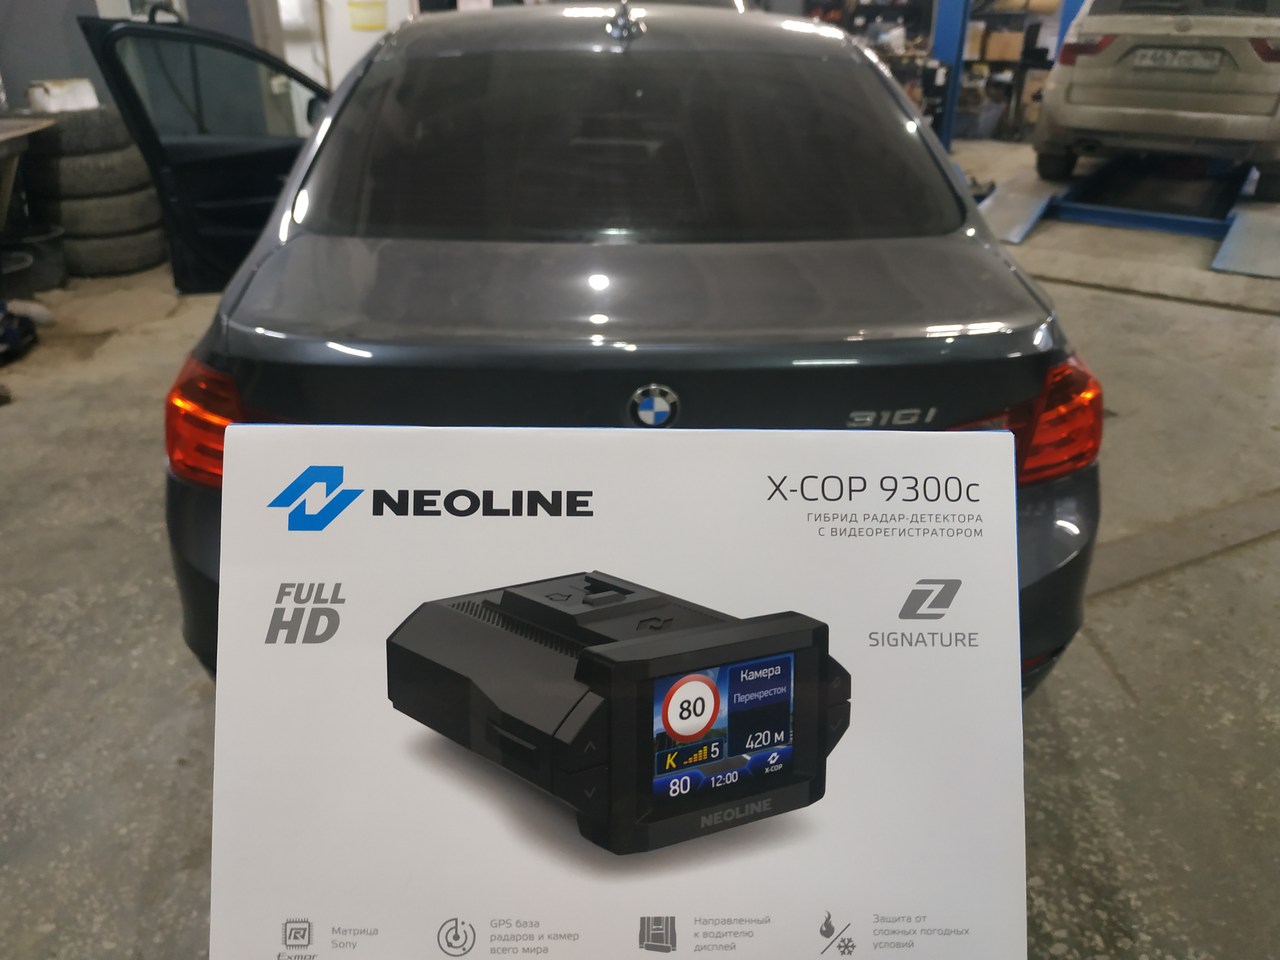 Neoline X-Cop 9300c